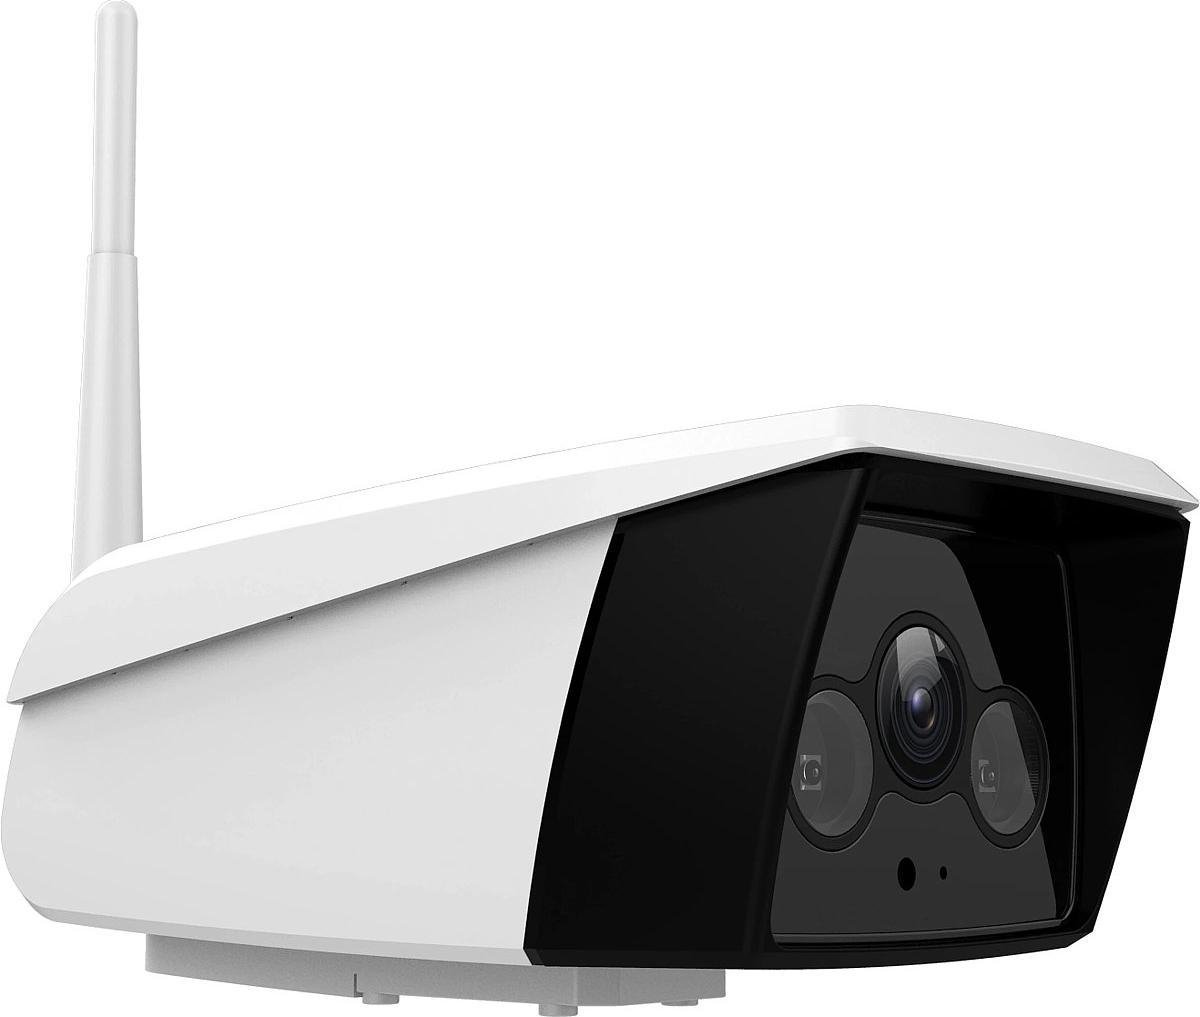 Vimtag B5(4MP) Smart Cloud IP Camera voor buitengebruik IP66, 1920*1080, Wifi & LAN